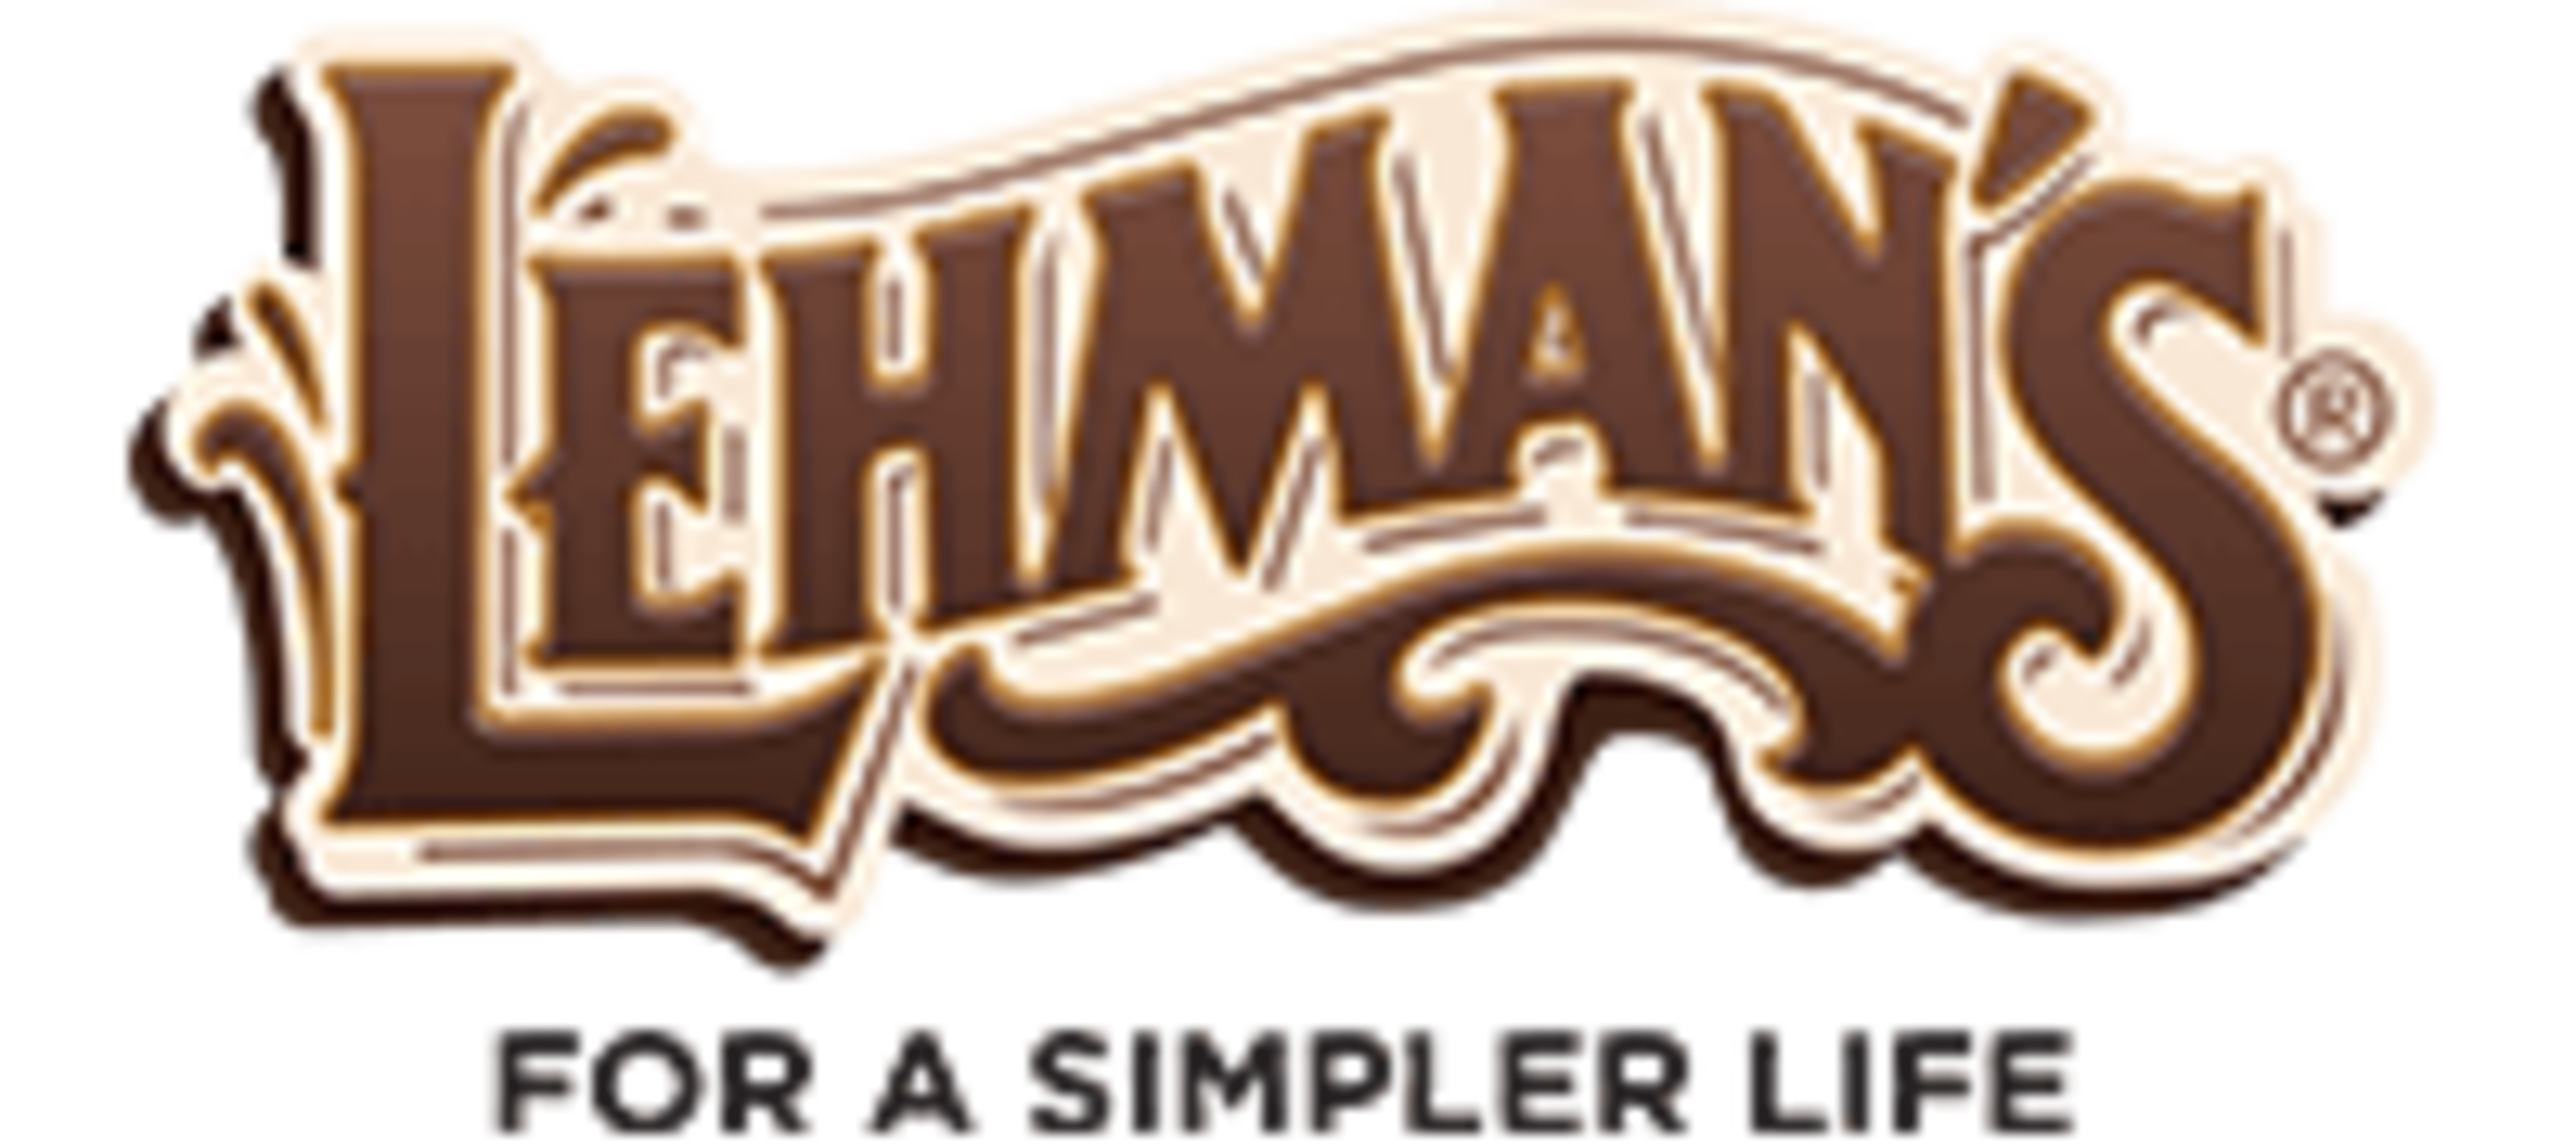 Lehman's Hardware & Appliance Code